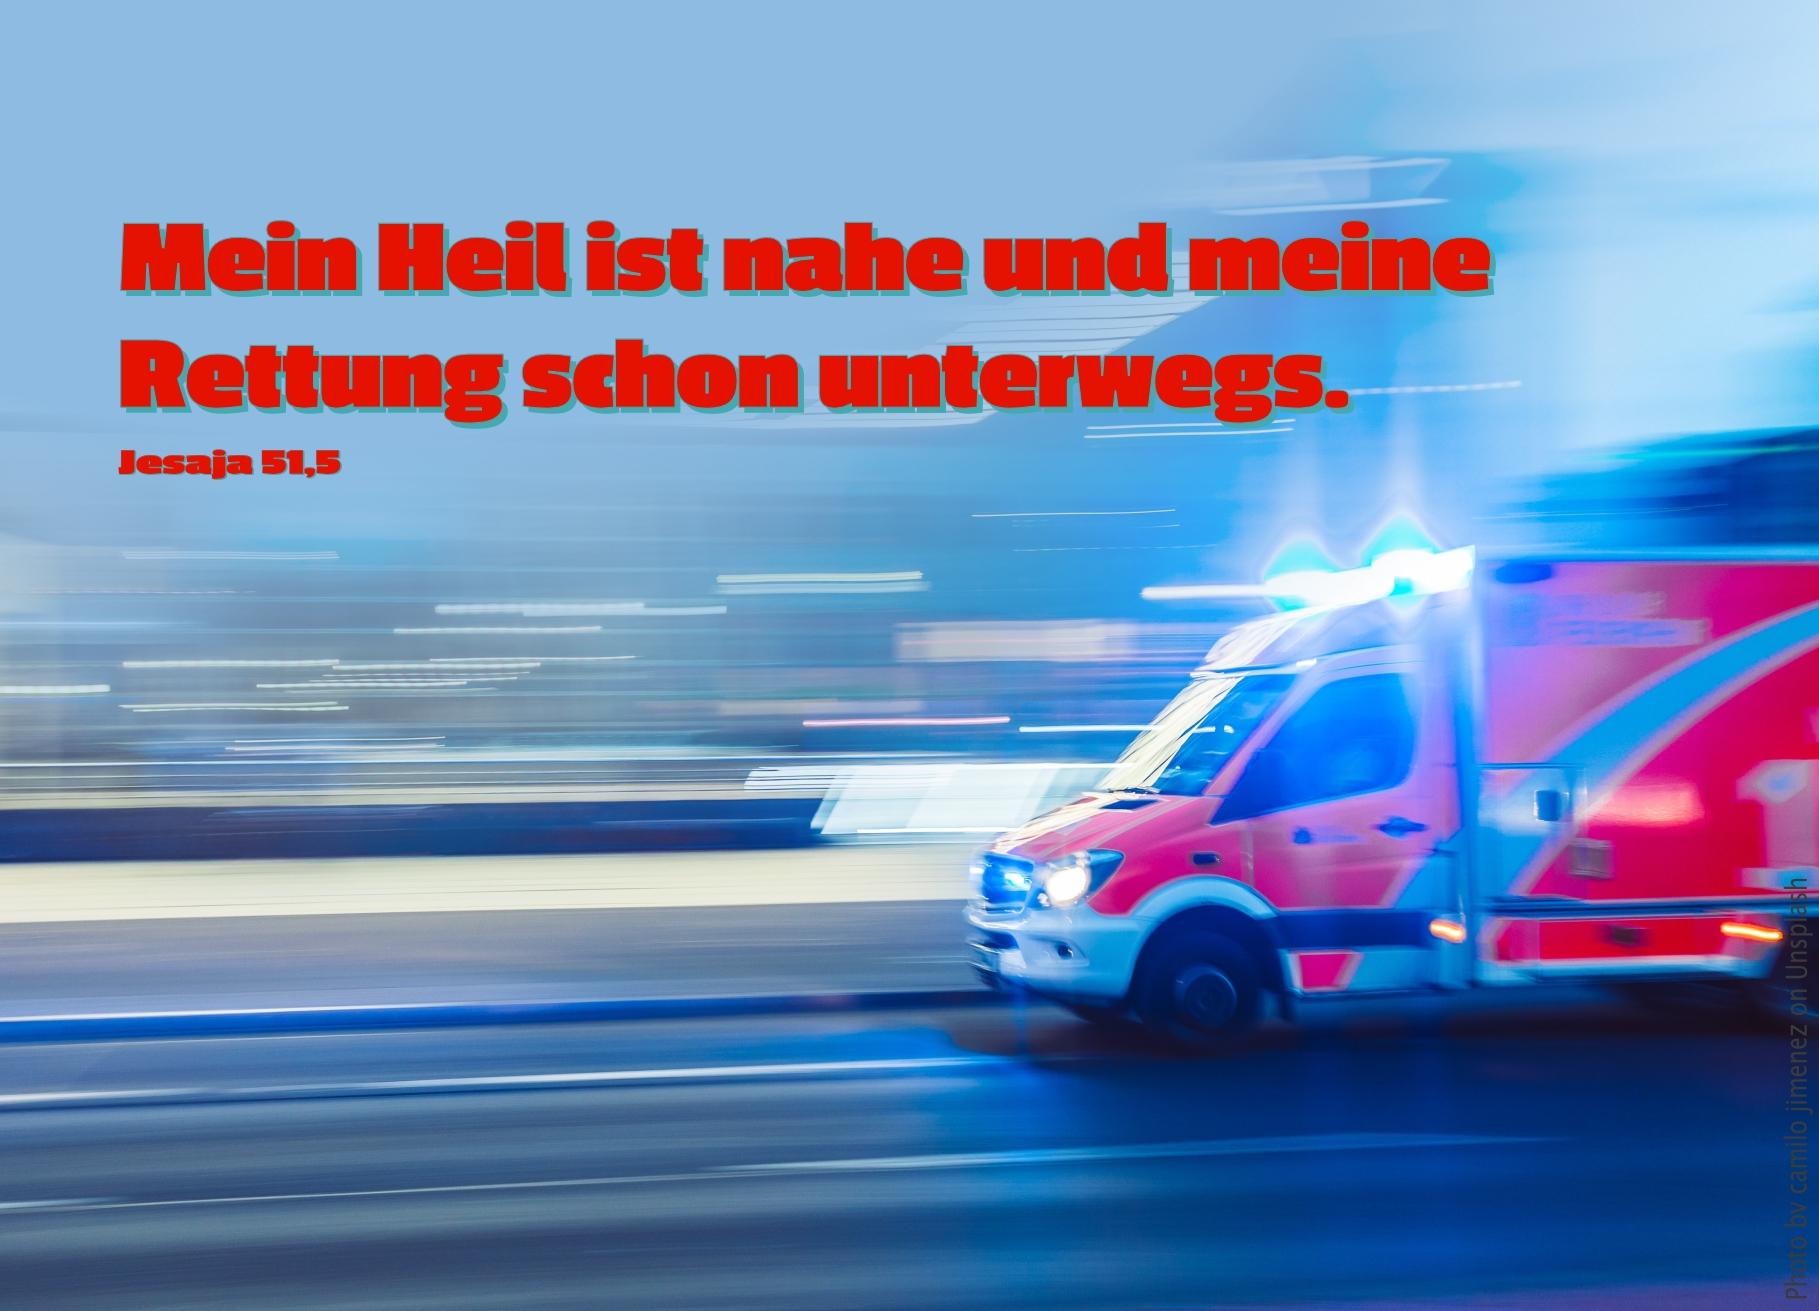 alt="rettungswagen_erwartet_bibelhoerbuch_leben_in_gottes_liebe"